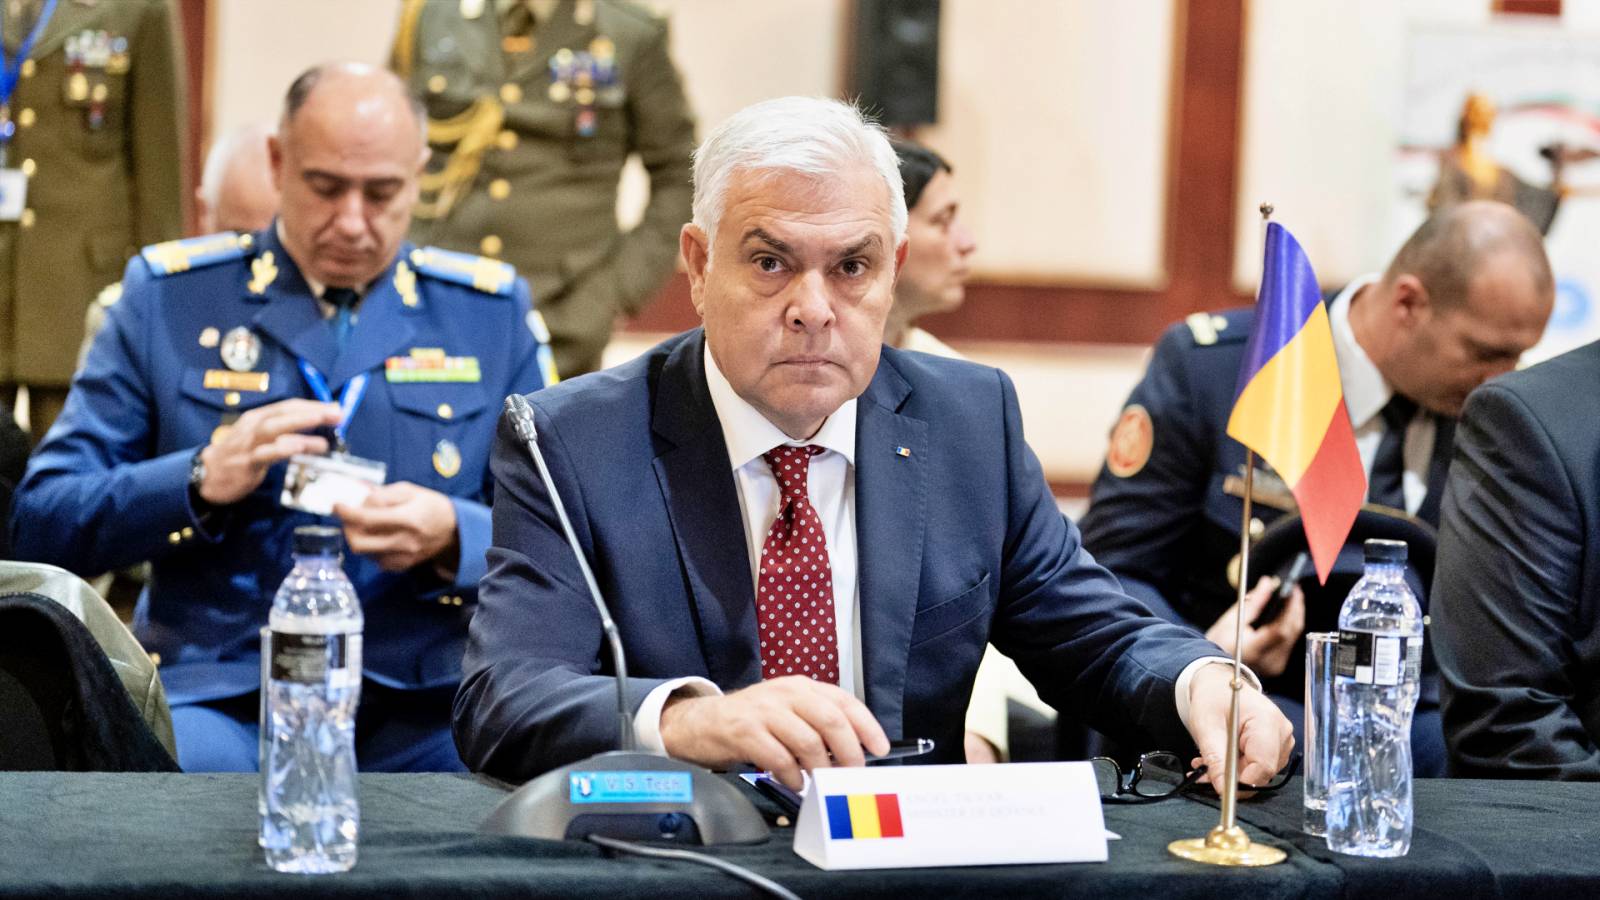 Le ministre de la Défense annonce des décisions officielles roumaines IMPORTANTES sur la Grande Guerre